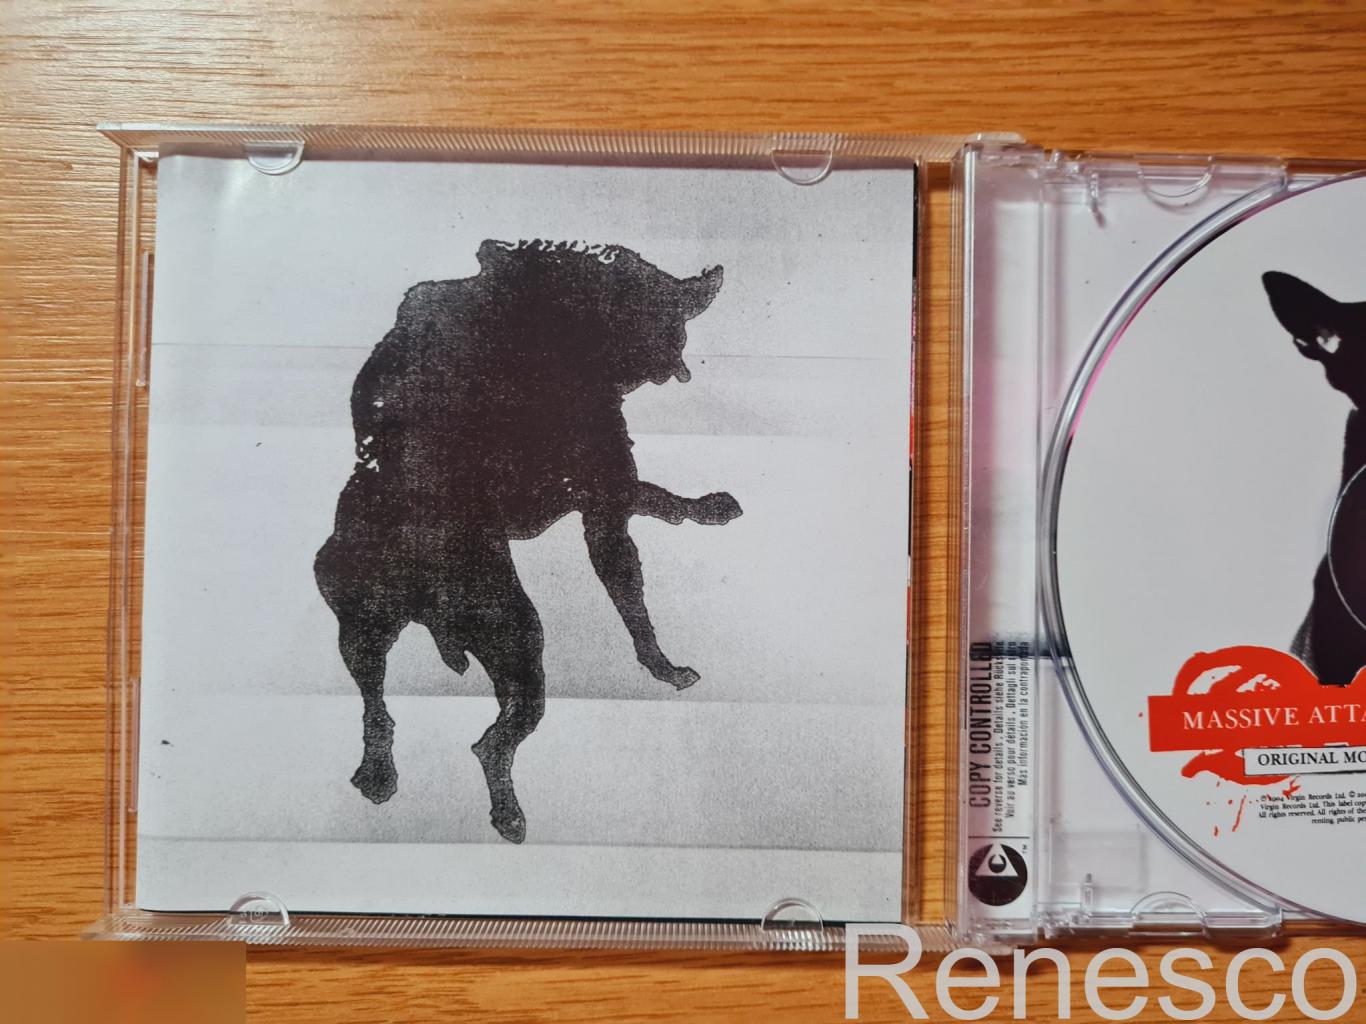 Massive Attack ?– Danny The Dog (Original Motion Picture Soundtrack) (Europe) (2 3